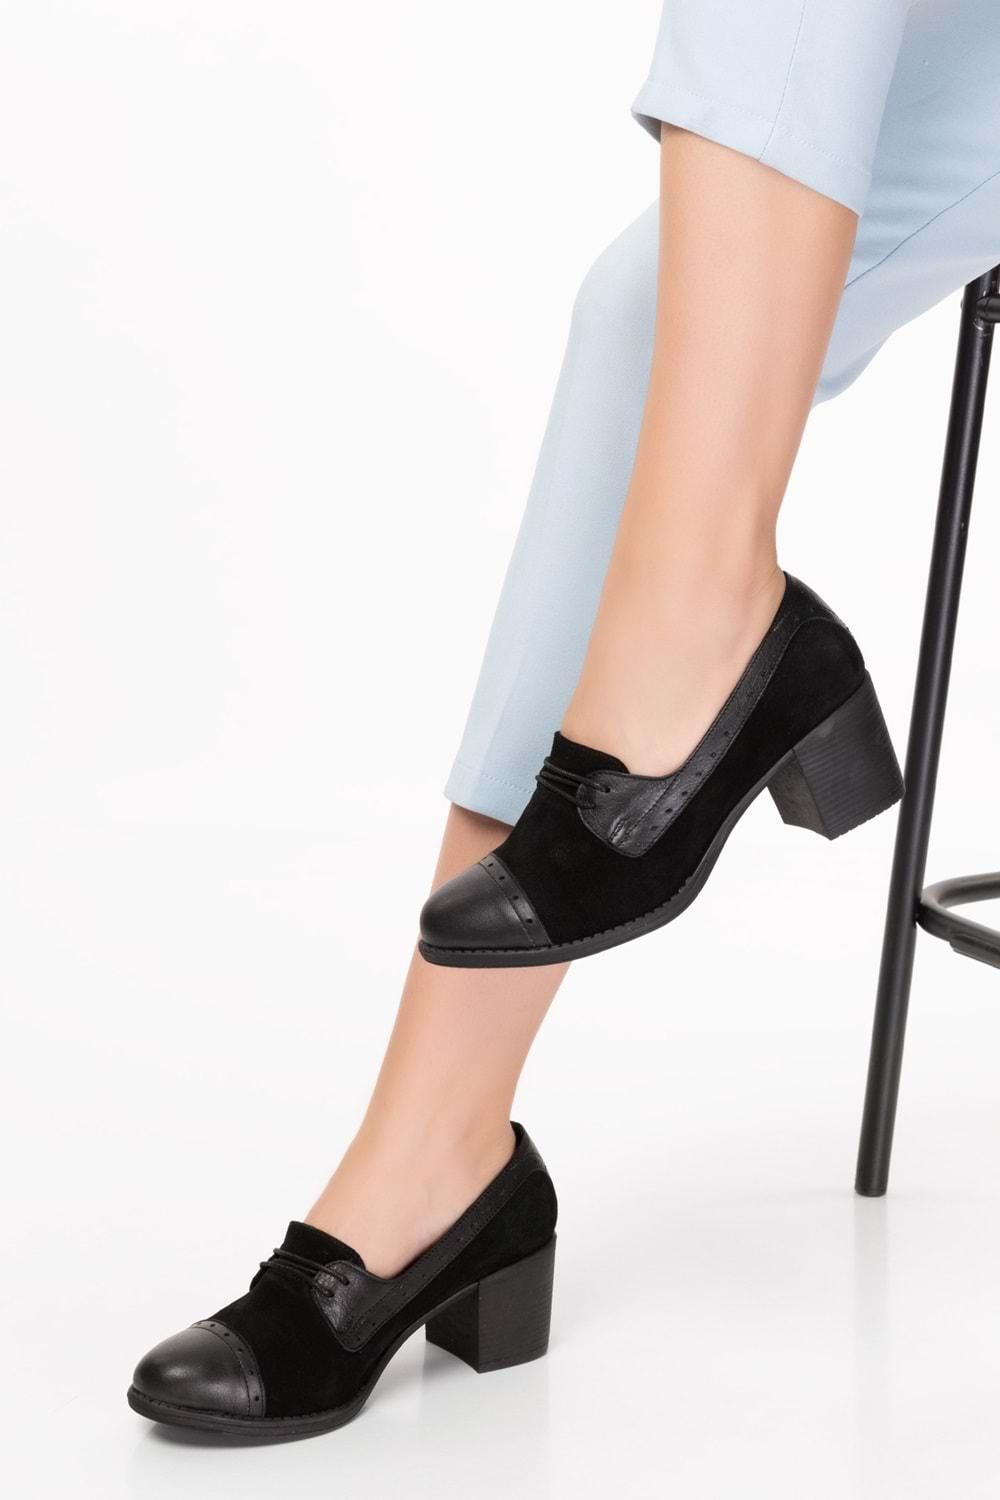 Gondol Kadın Hakiki Deri Rahat Topuklu Ayakkabı anl.7078 - Siyah - 40